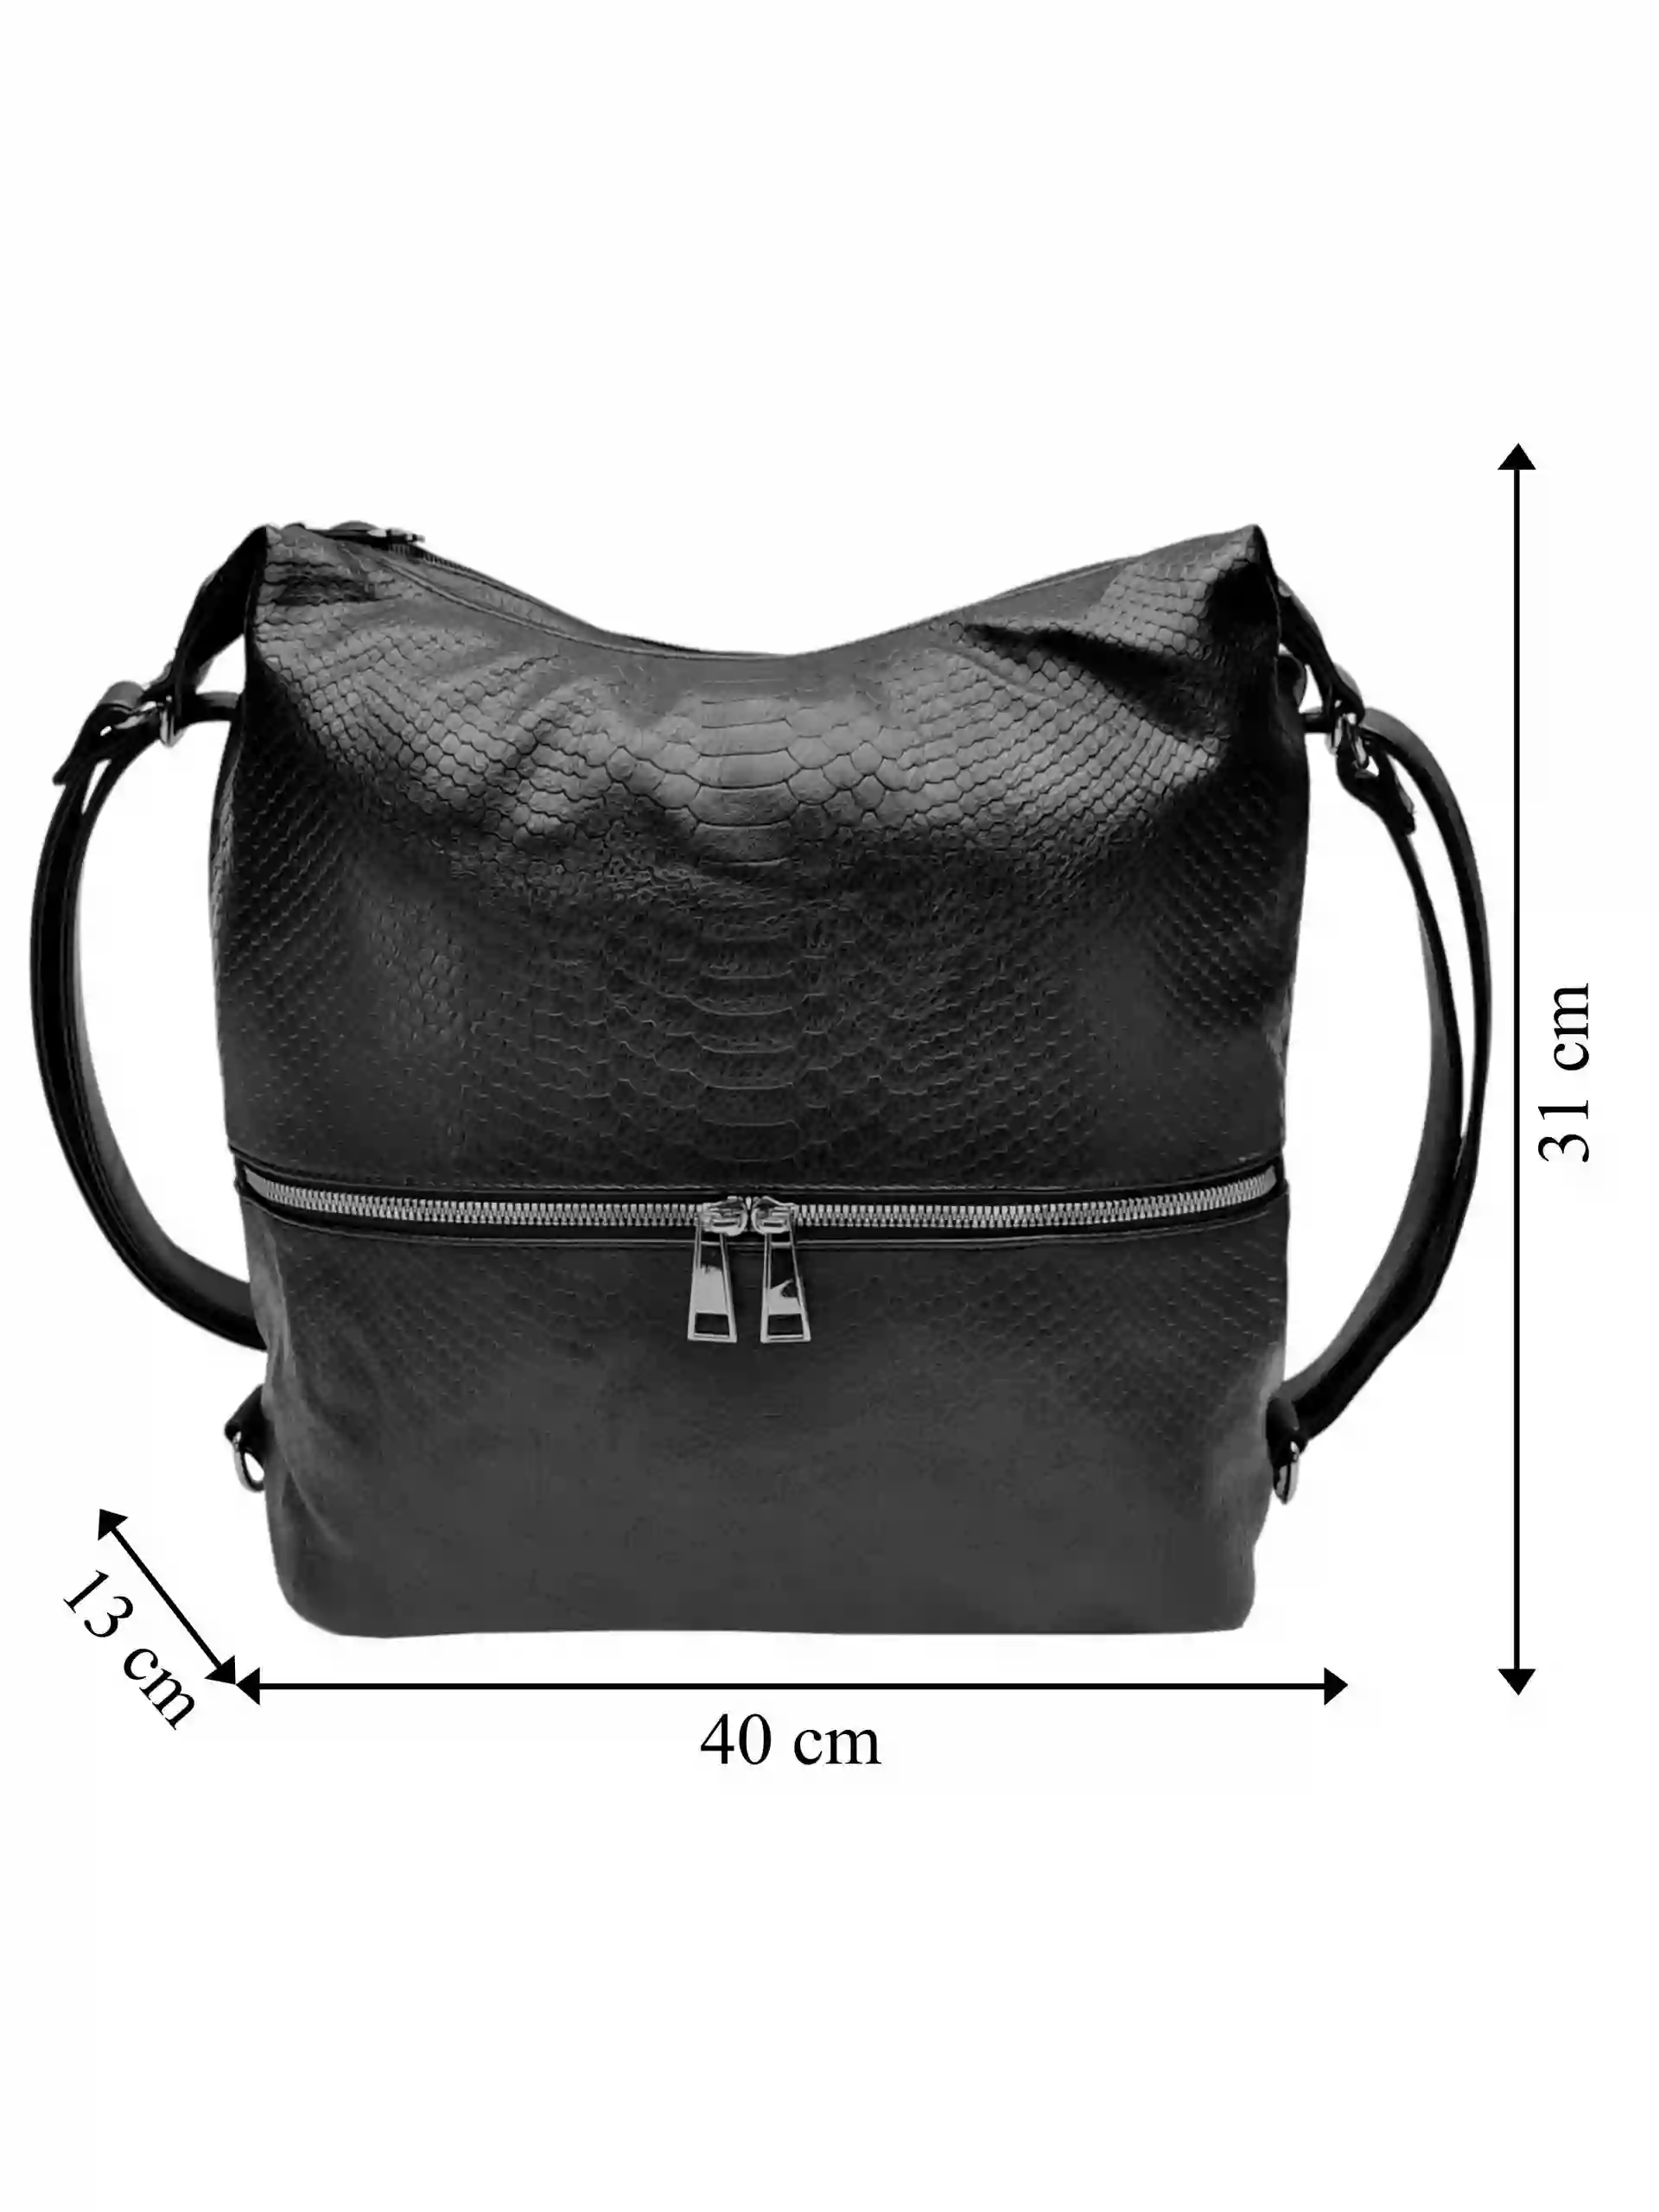 Moderní černý kabelko-batoh z eko kůže, Tapple, H190010, přední strana kabelko-batohu 2v1 s rozměry